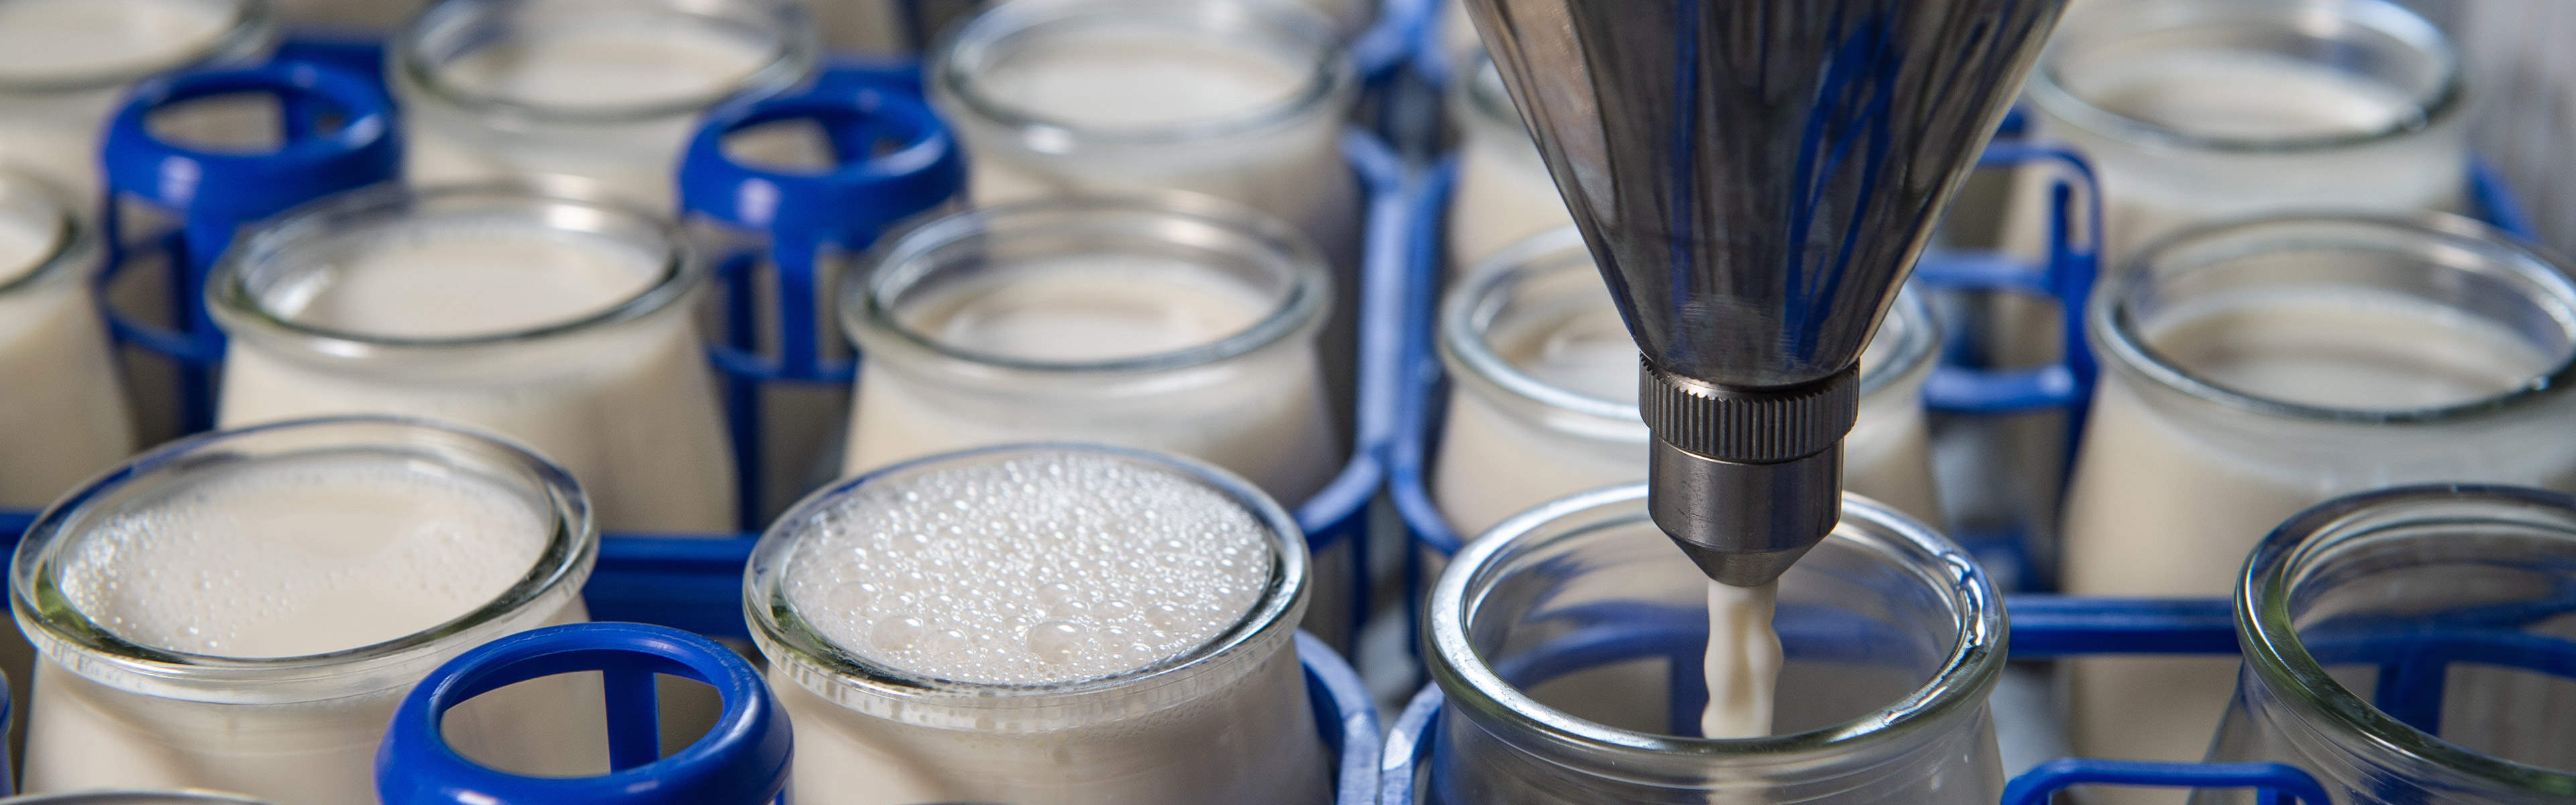 spx-toepassing melk en zuivelproducten detail2